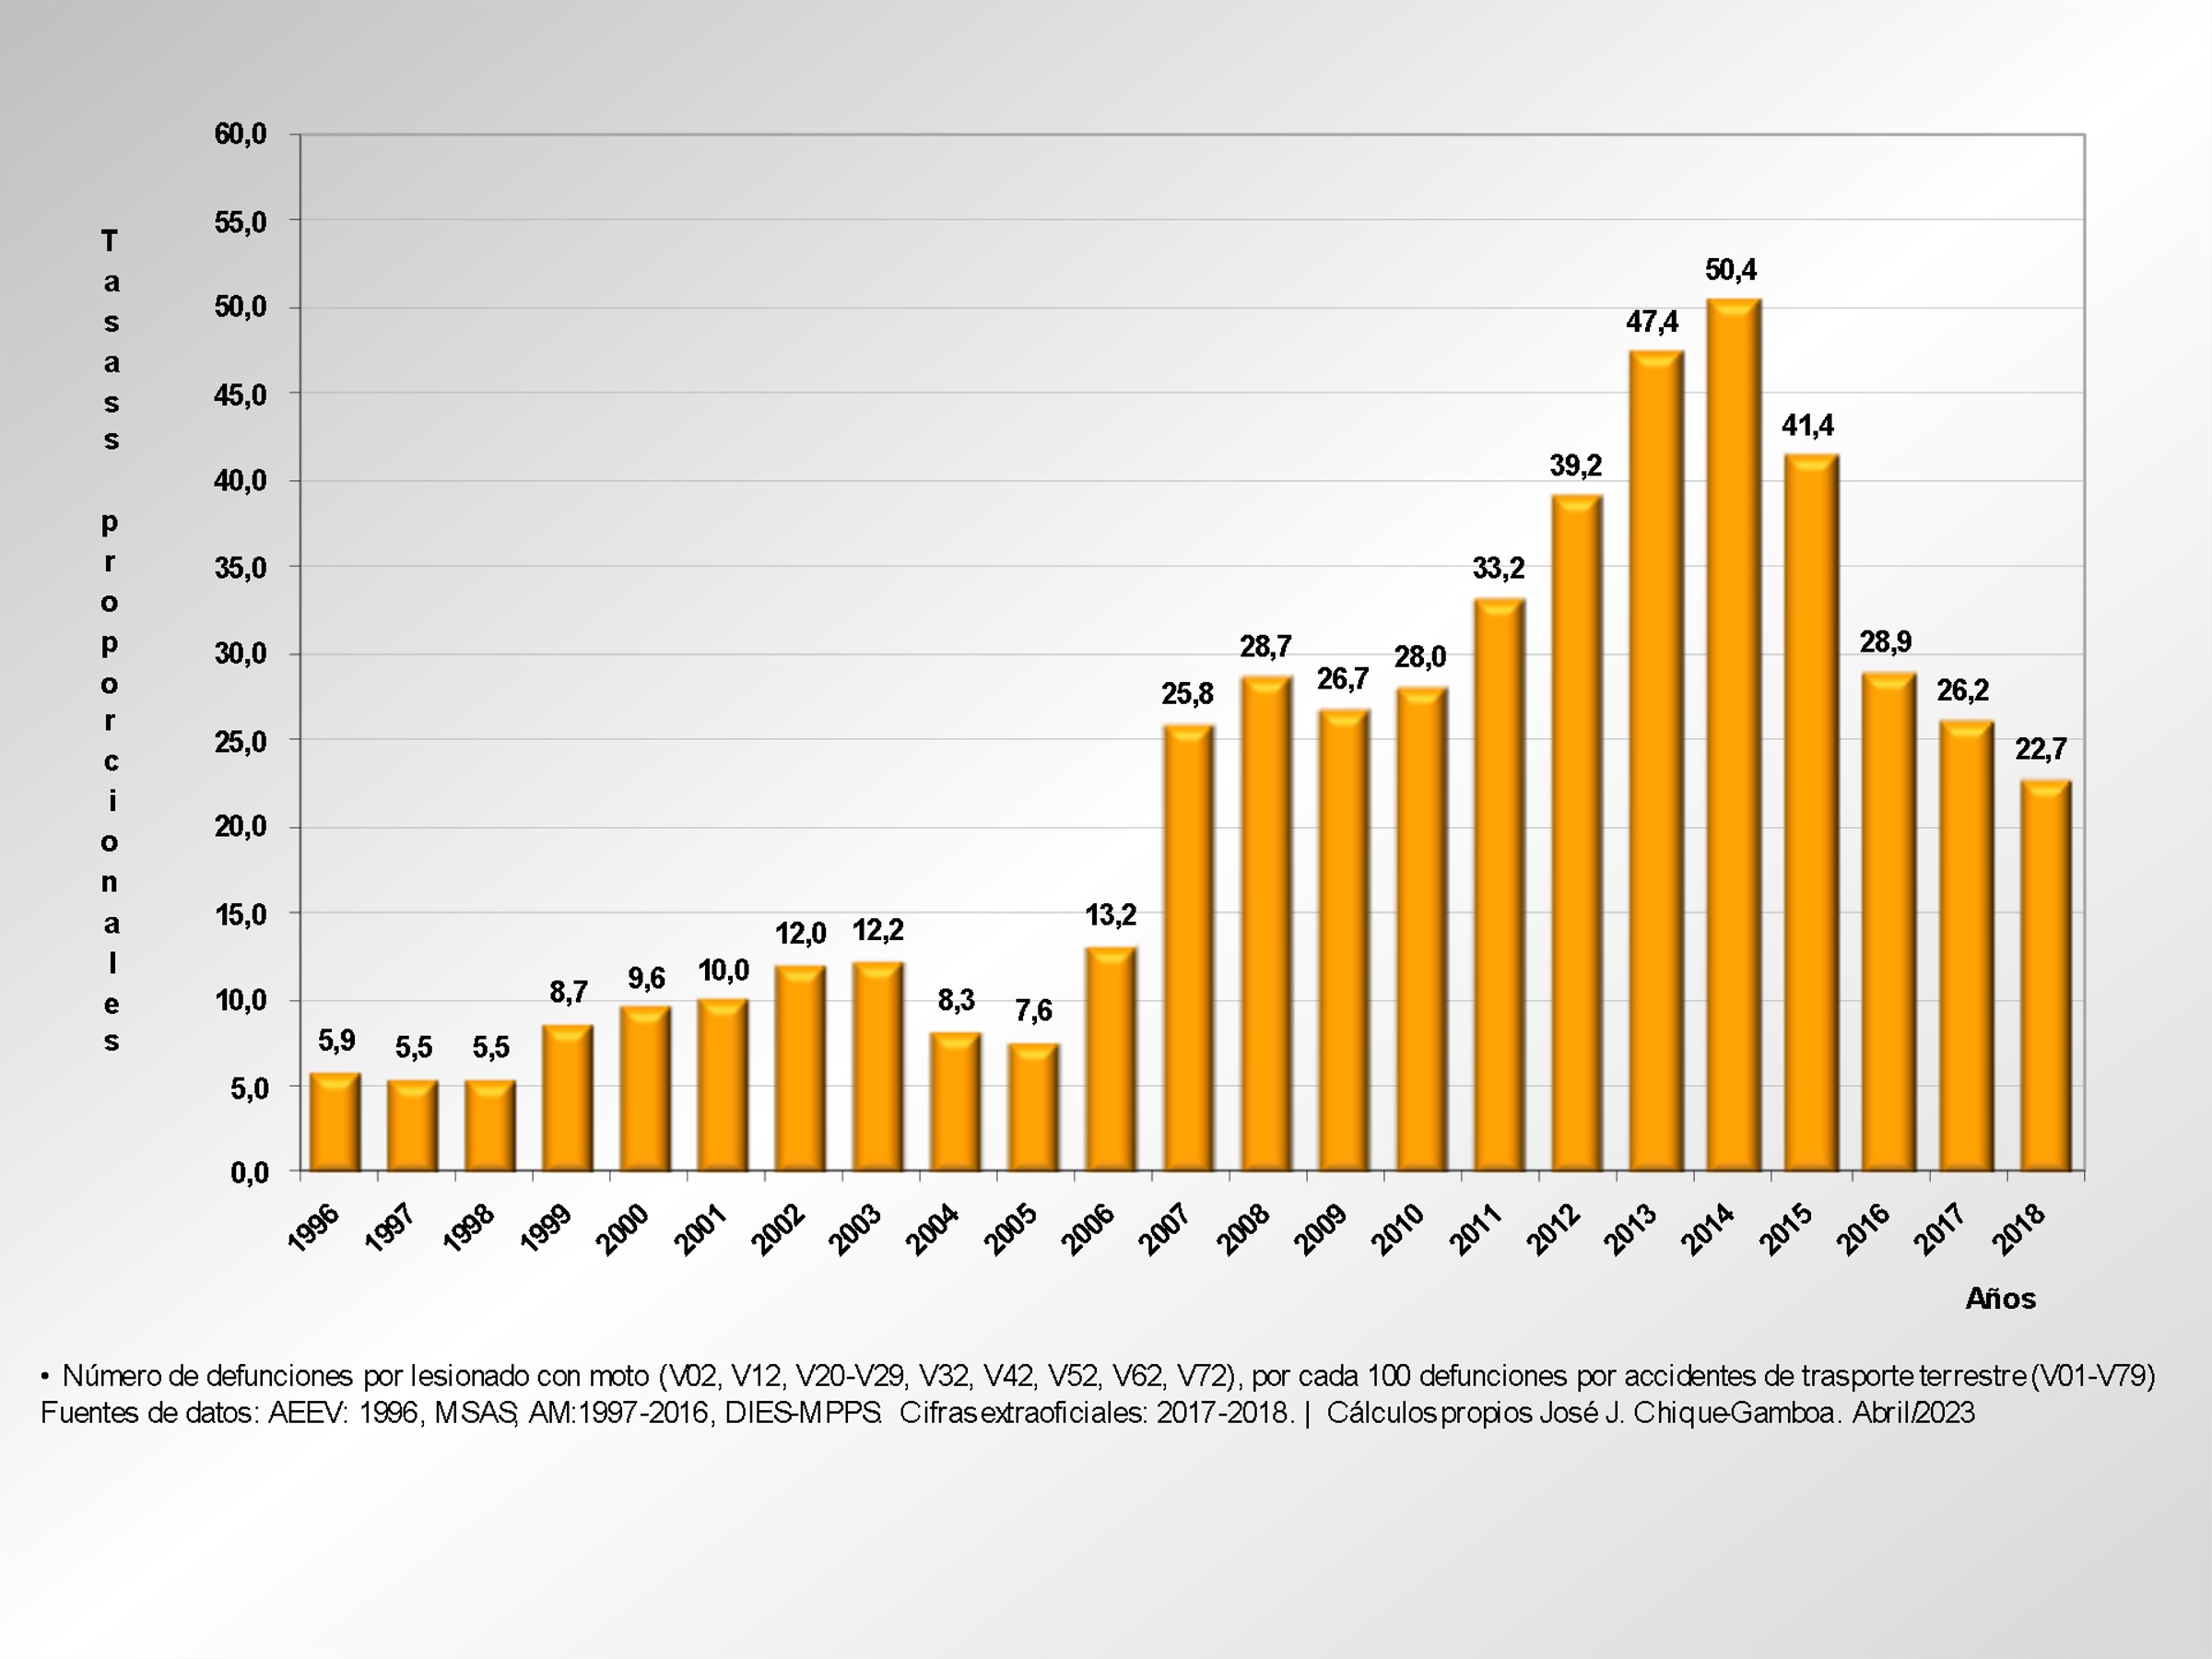 Tasas proporcionales de mortalidad de
lesionado en accidente con moto (V02, V12, V20-V29, V32, V42, V52, V62, V72),
con relación a la mortalidad por accidentes de transporte terrestre (V01-V79).
Venezuela. 1996-2018